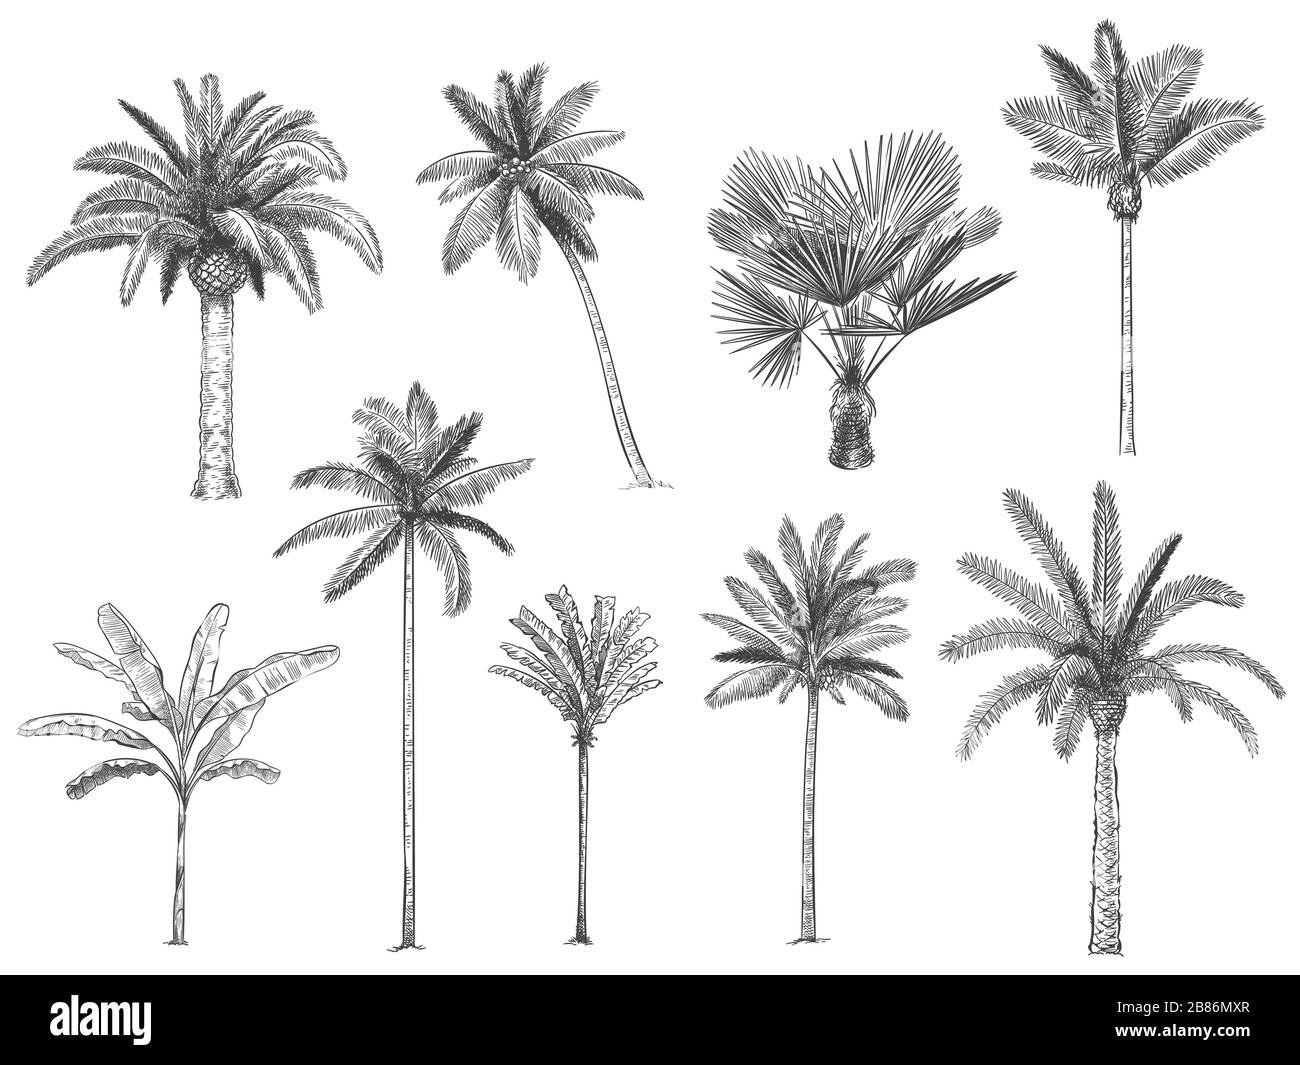 Palmiers tropicaux dessinés à la main. Jeu de vecteurs Illustration de Vecteur